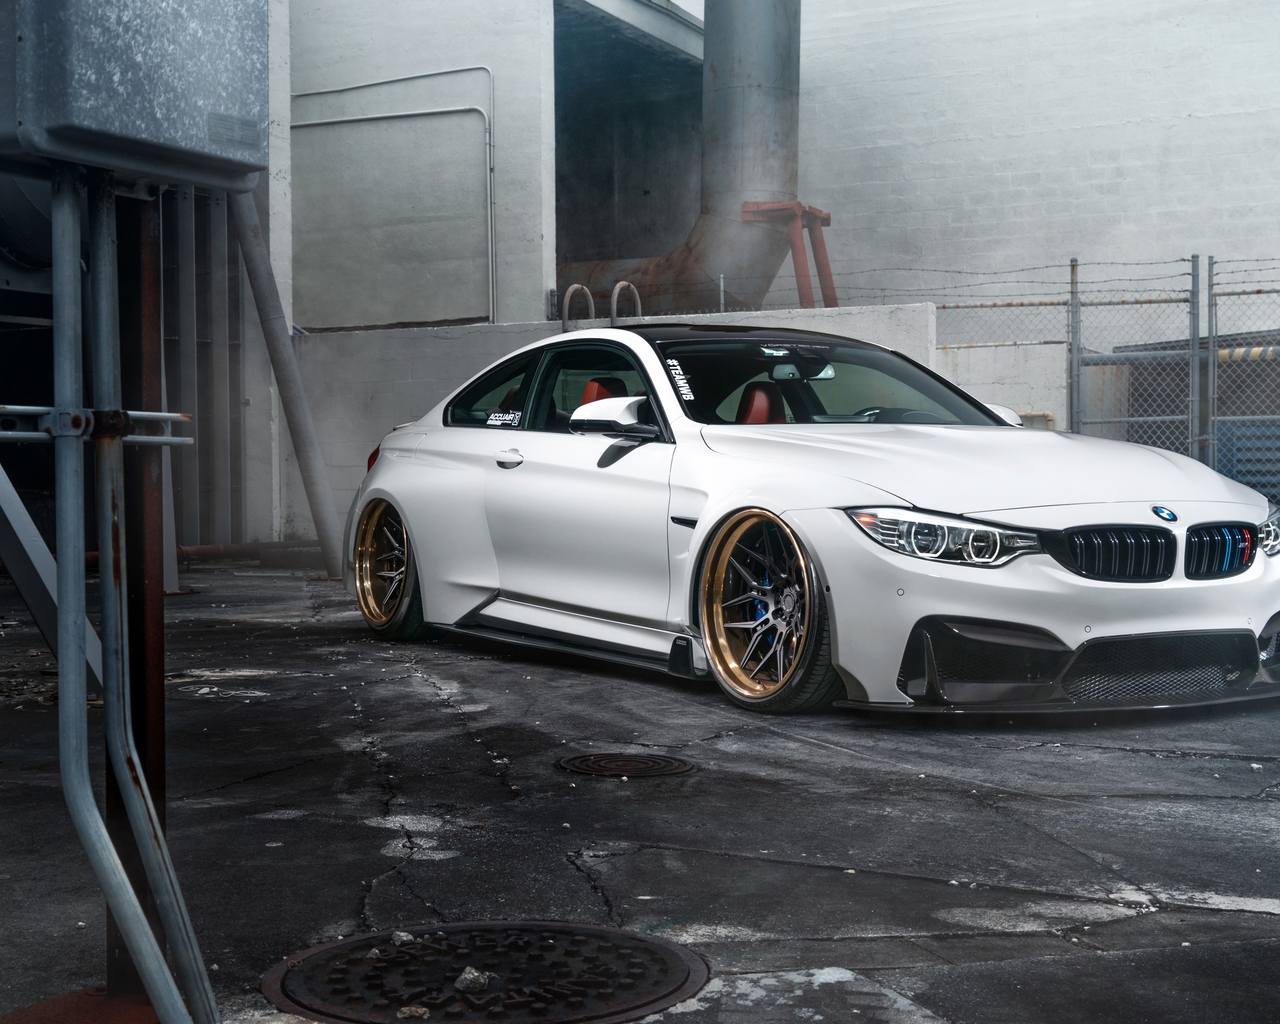 Image: BMW, M4, ADV1, tuning, white